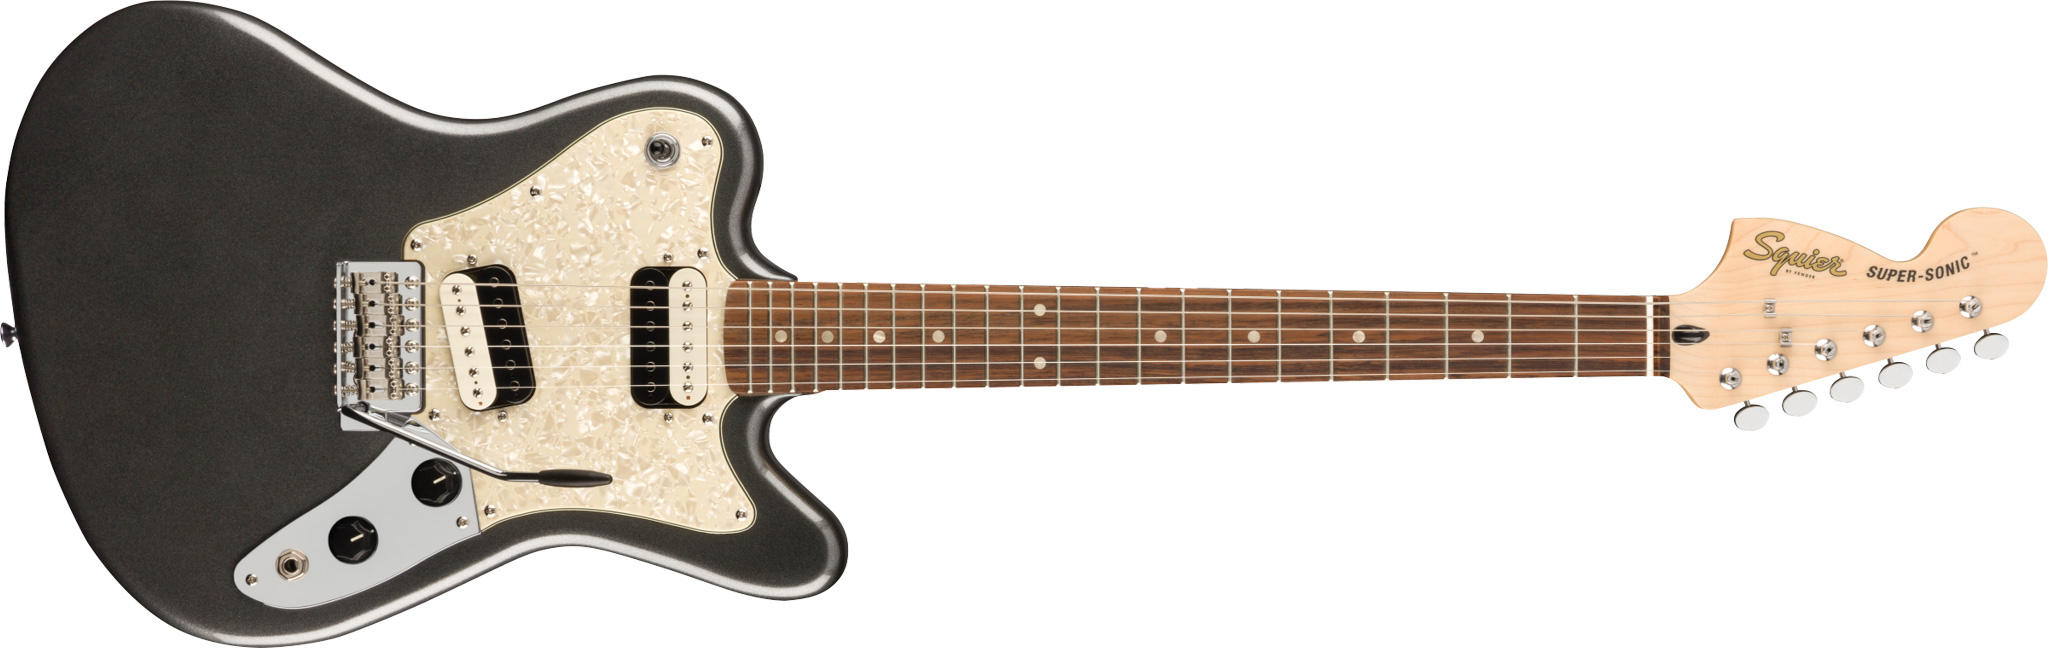 Se Fender Squier Paranormal Super-Sonic El-guitar (Graphite Metallic) hos Drum City